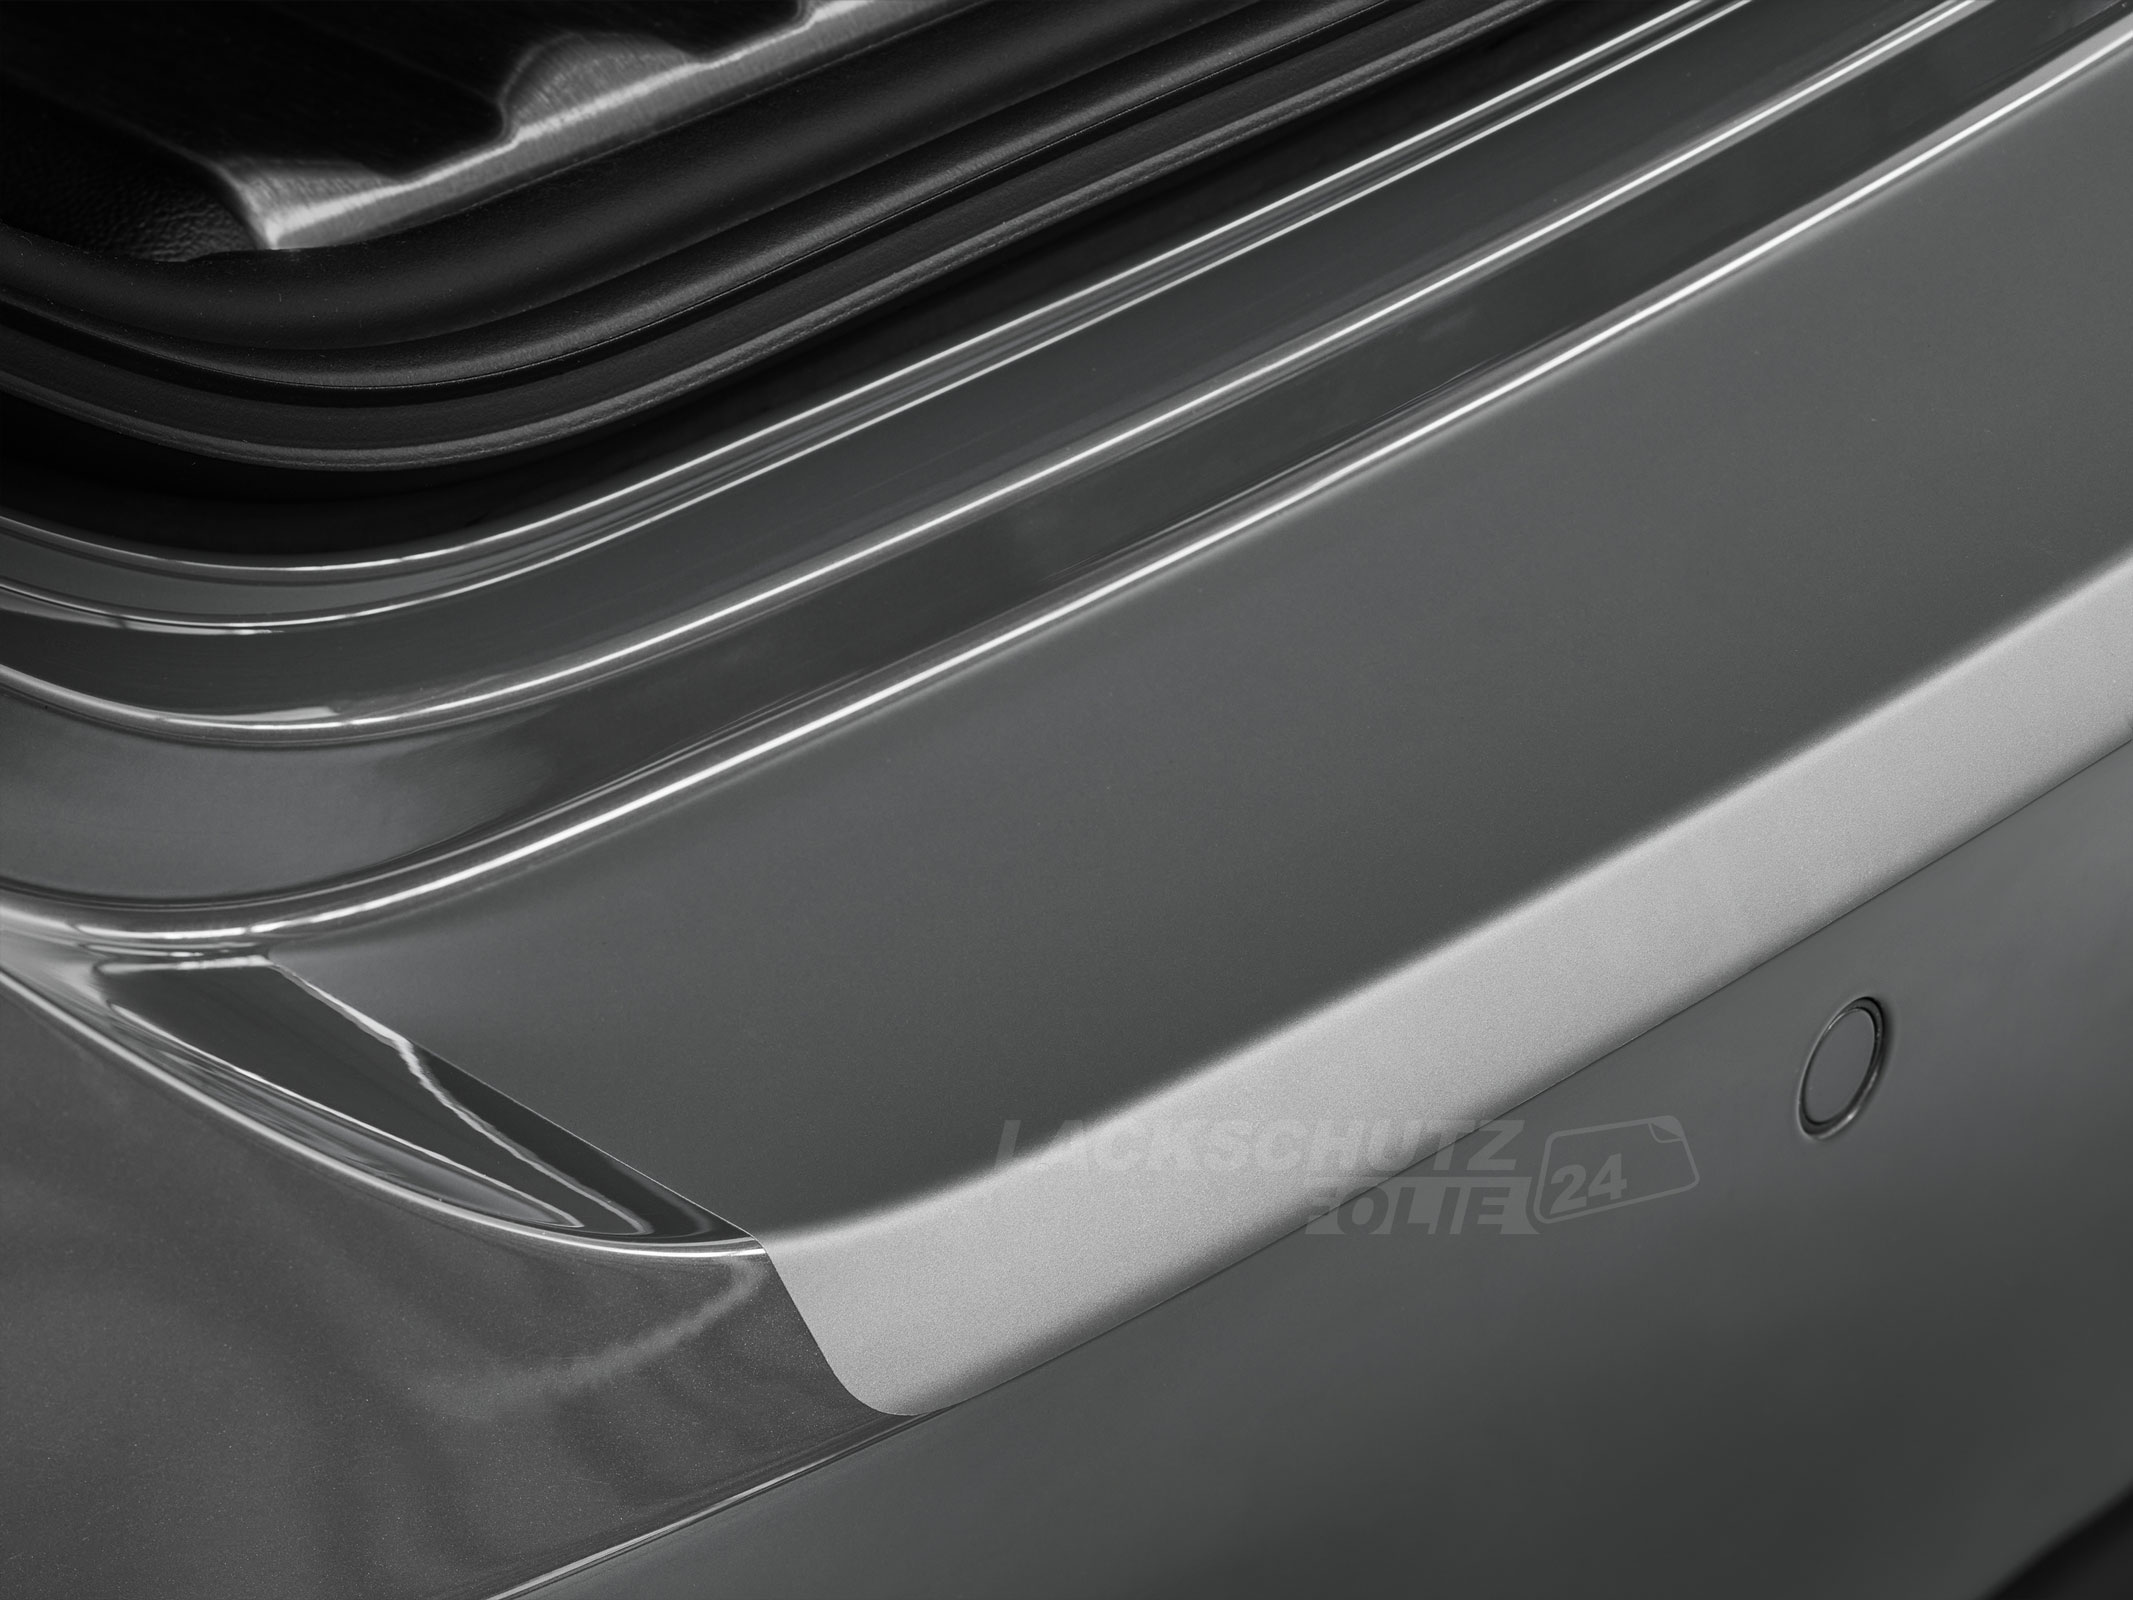 Ladekantenschutzfolie - Transparent Glatt MATT 110 µm stark  für Fiat 500L Facelift, ab BJ 2017